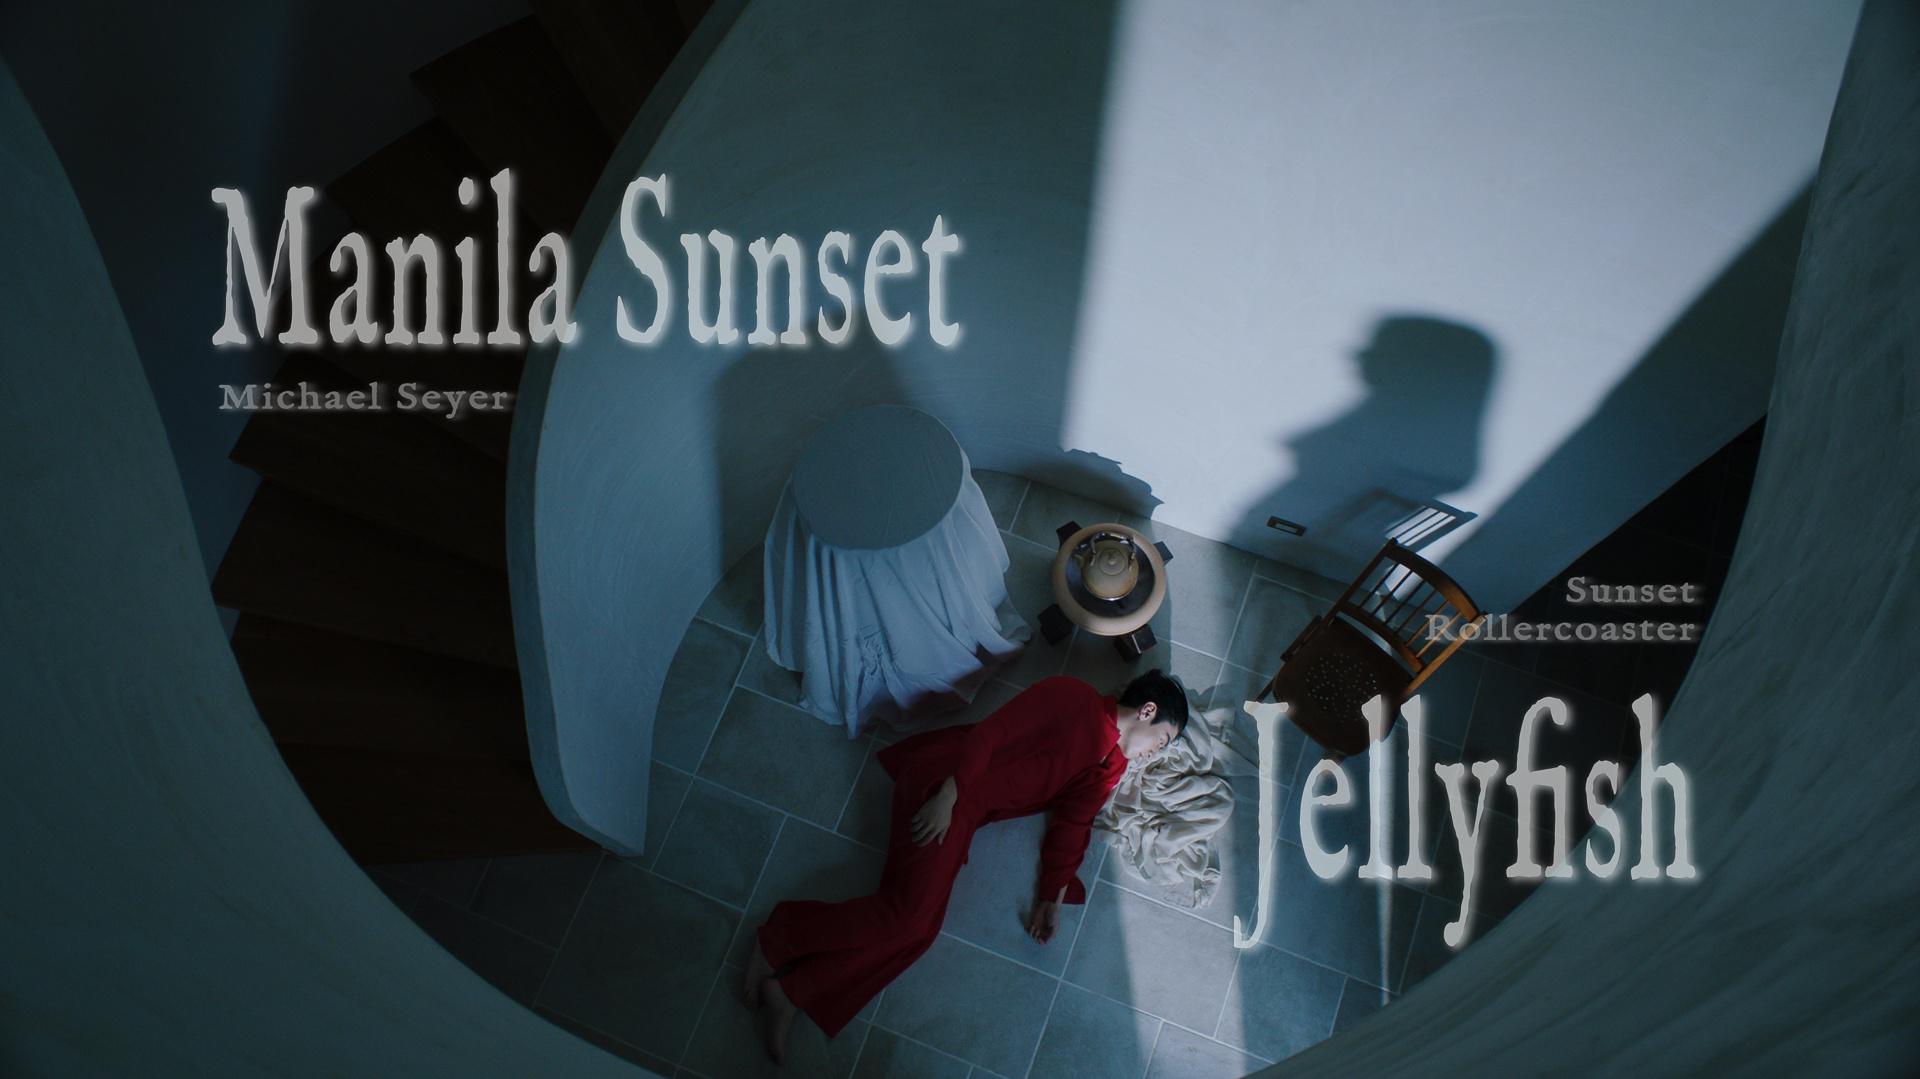 落日飞车 - Michael Seyer - Manila Sunset / Sunset Rollercoaster - Jellyfish (Official Video), 2022